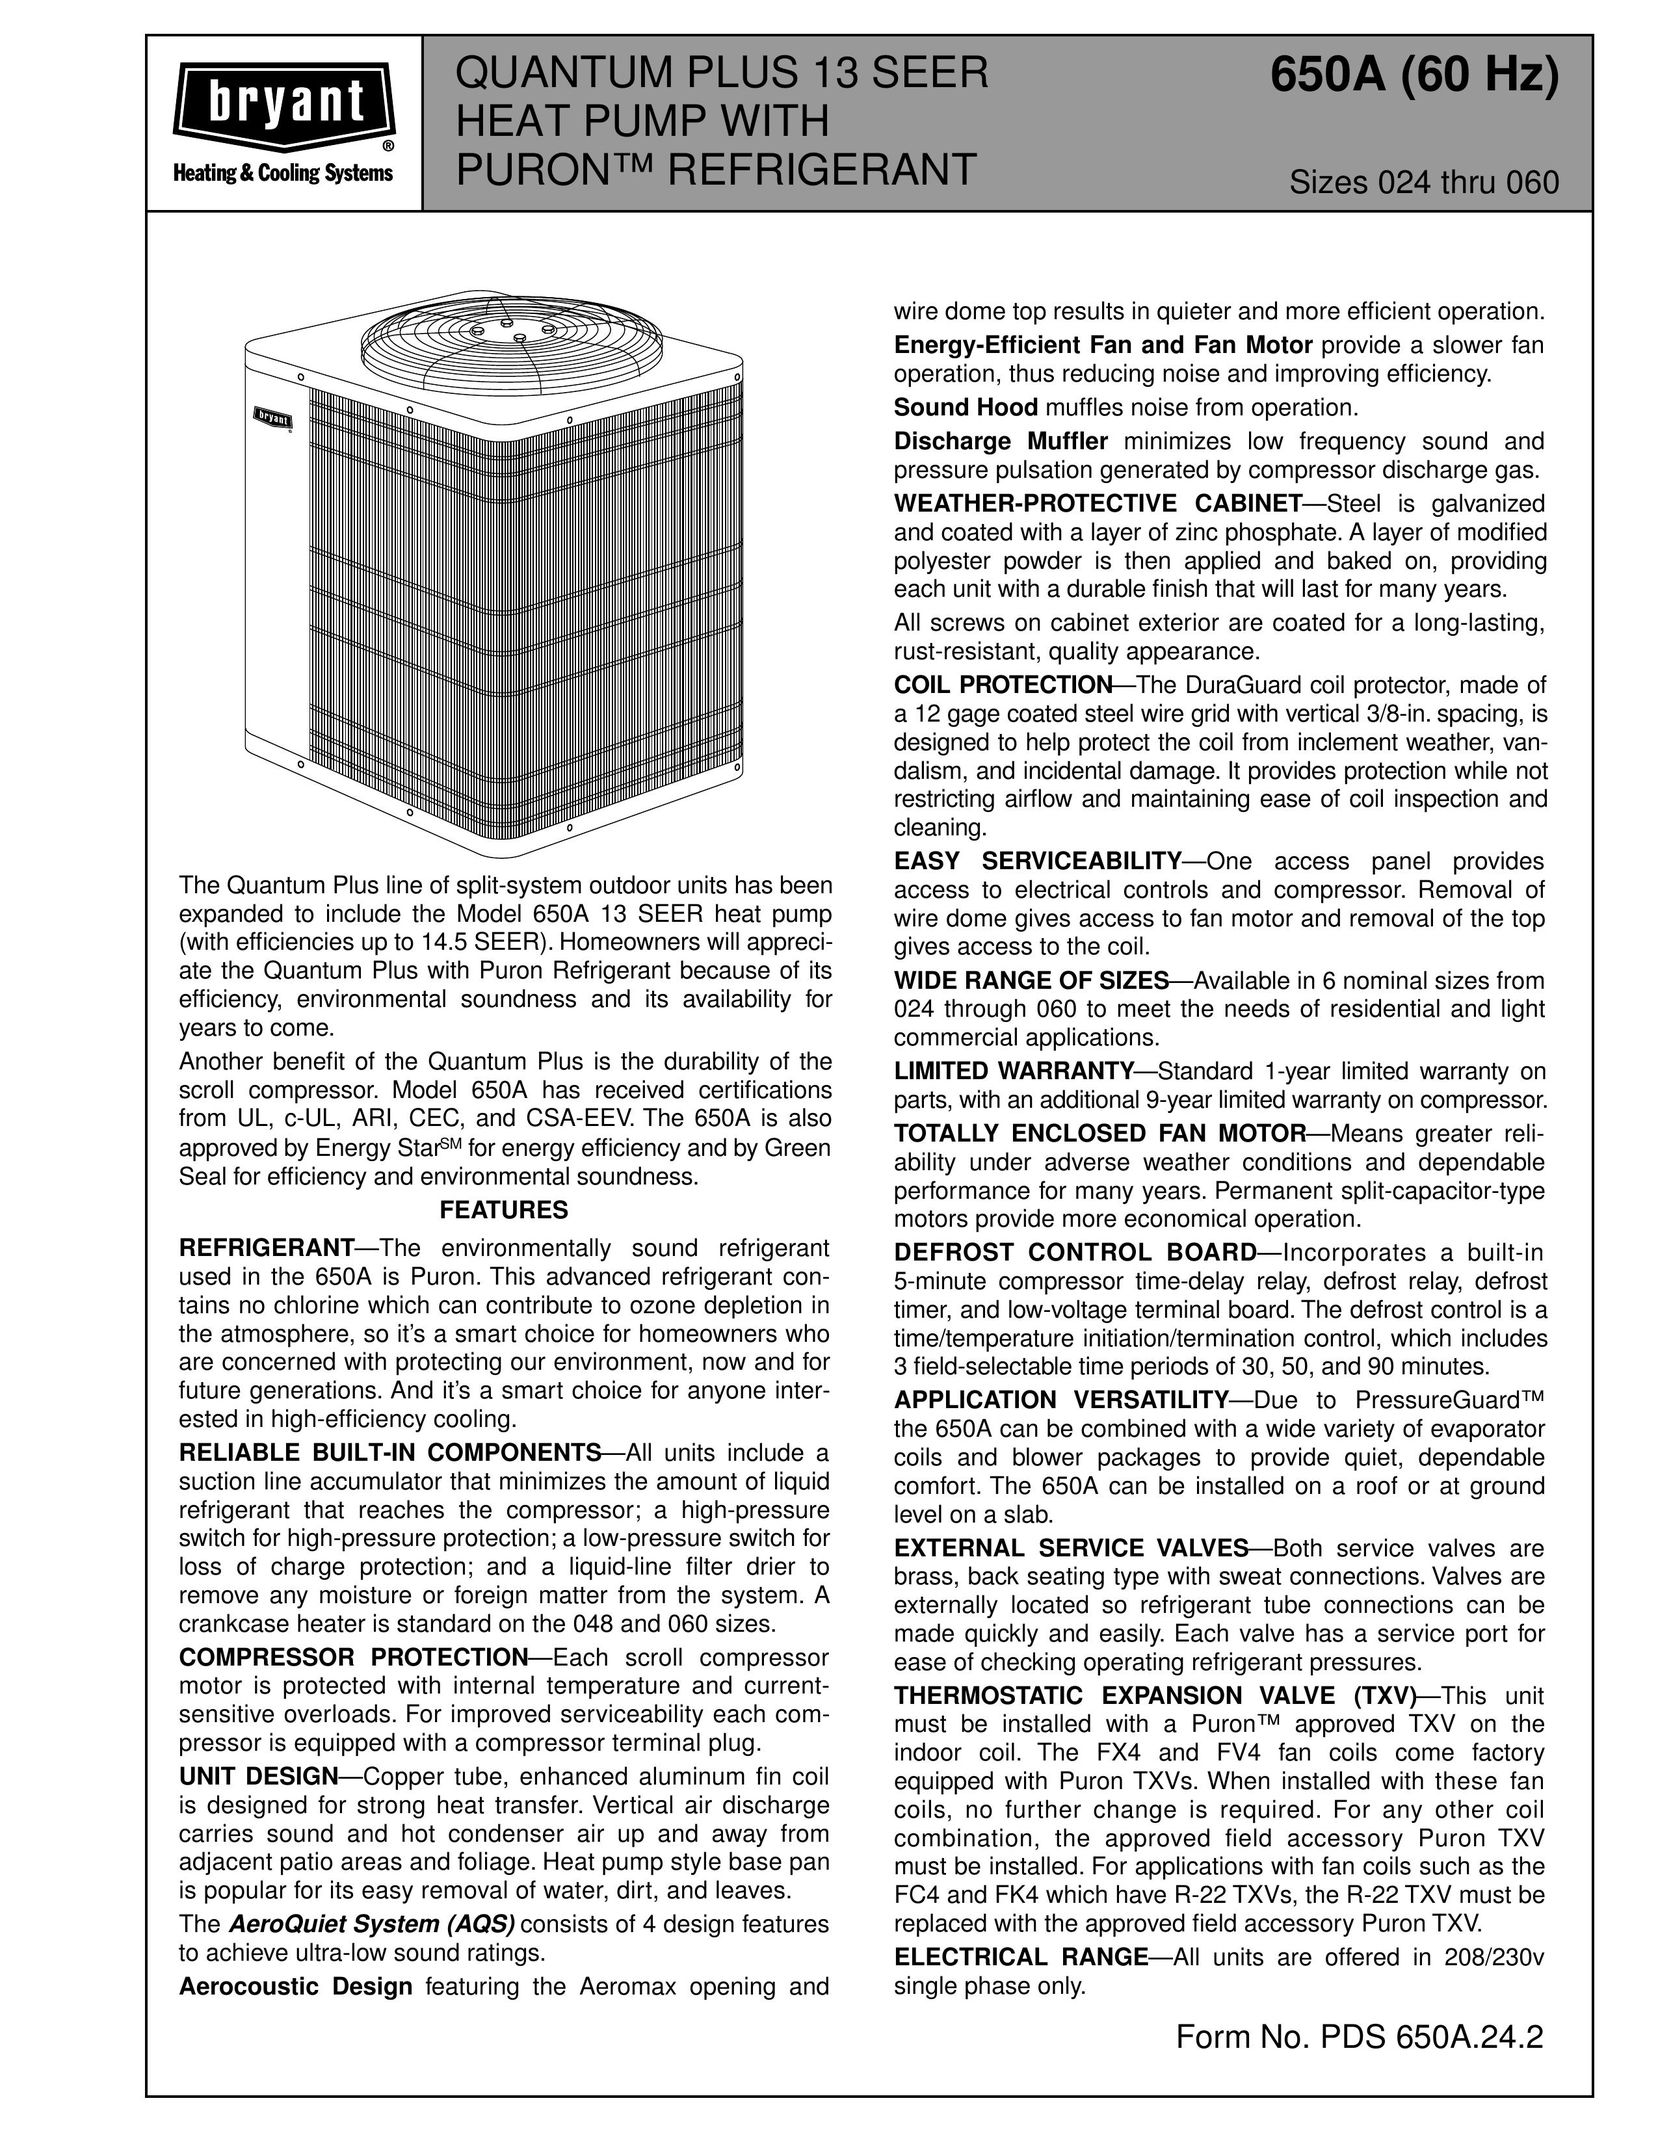 Bryant 650A Heat Pump User Manual